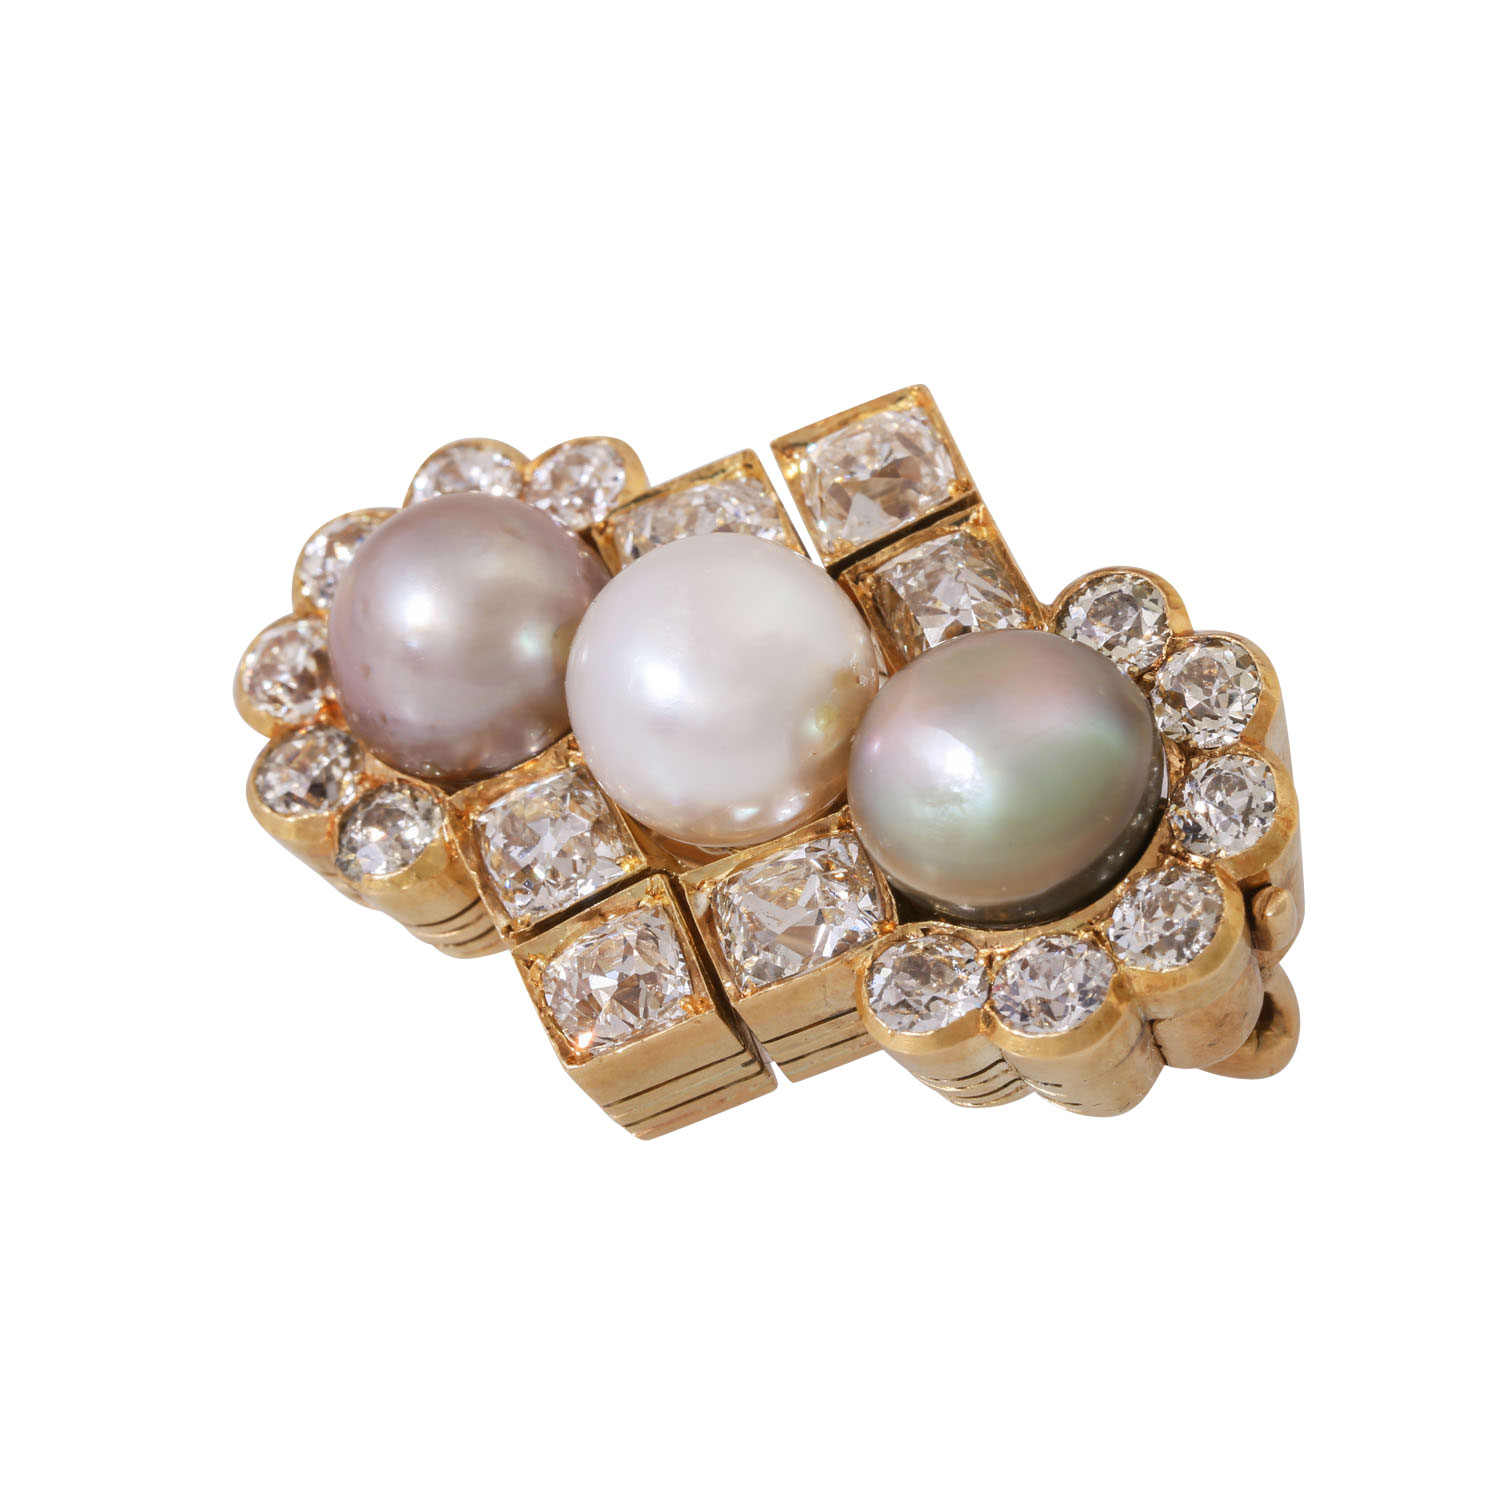 RUSSLAND Exquisite Brosche mit Diamanten und Perlen, - Image 3 of 6